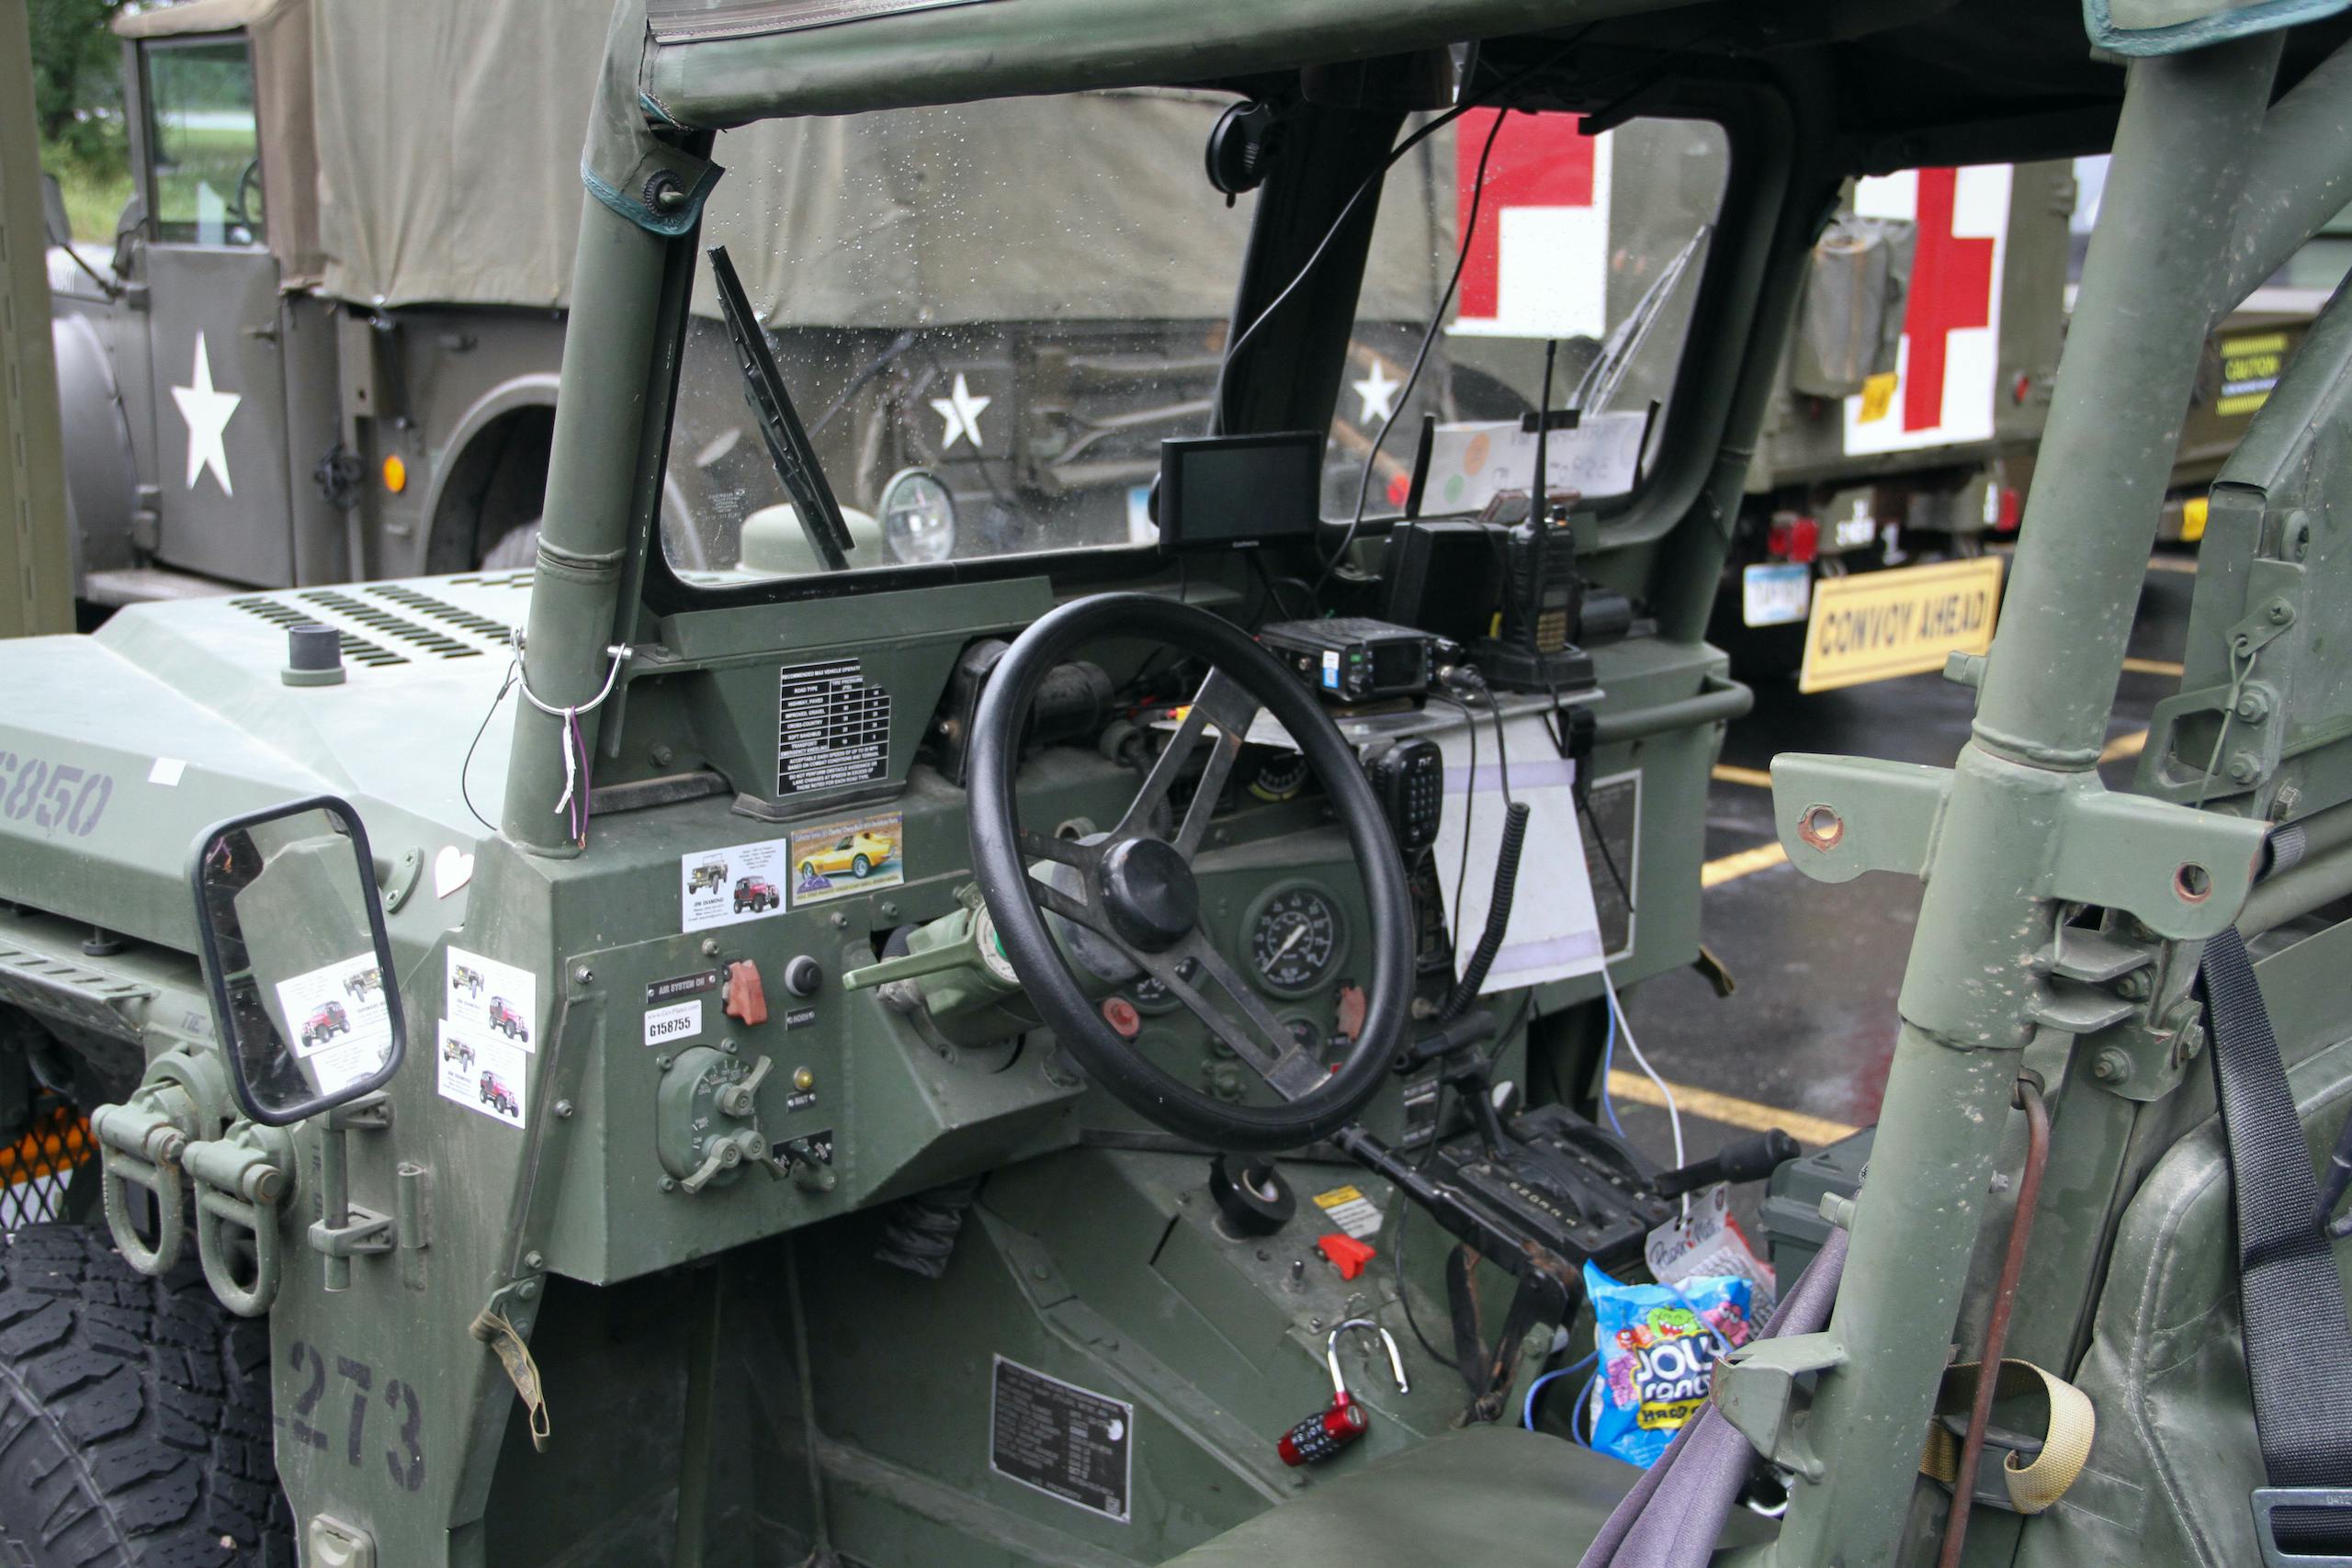 Military vehicle convoy usmc interior